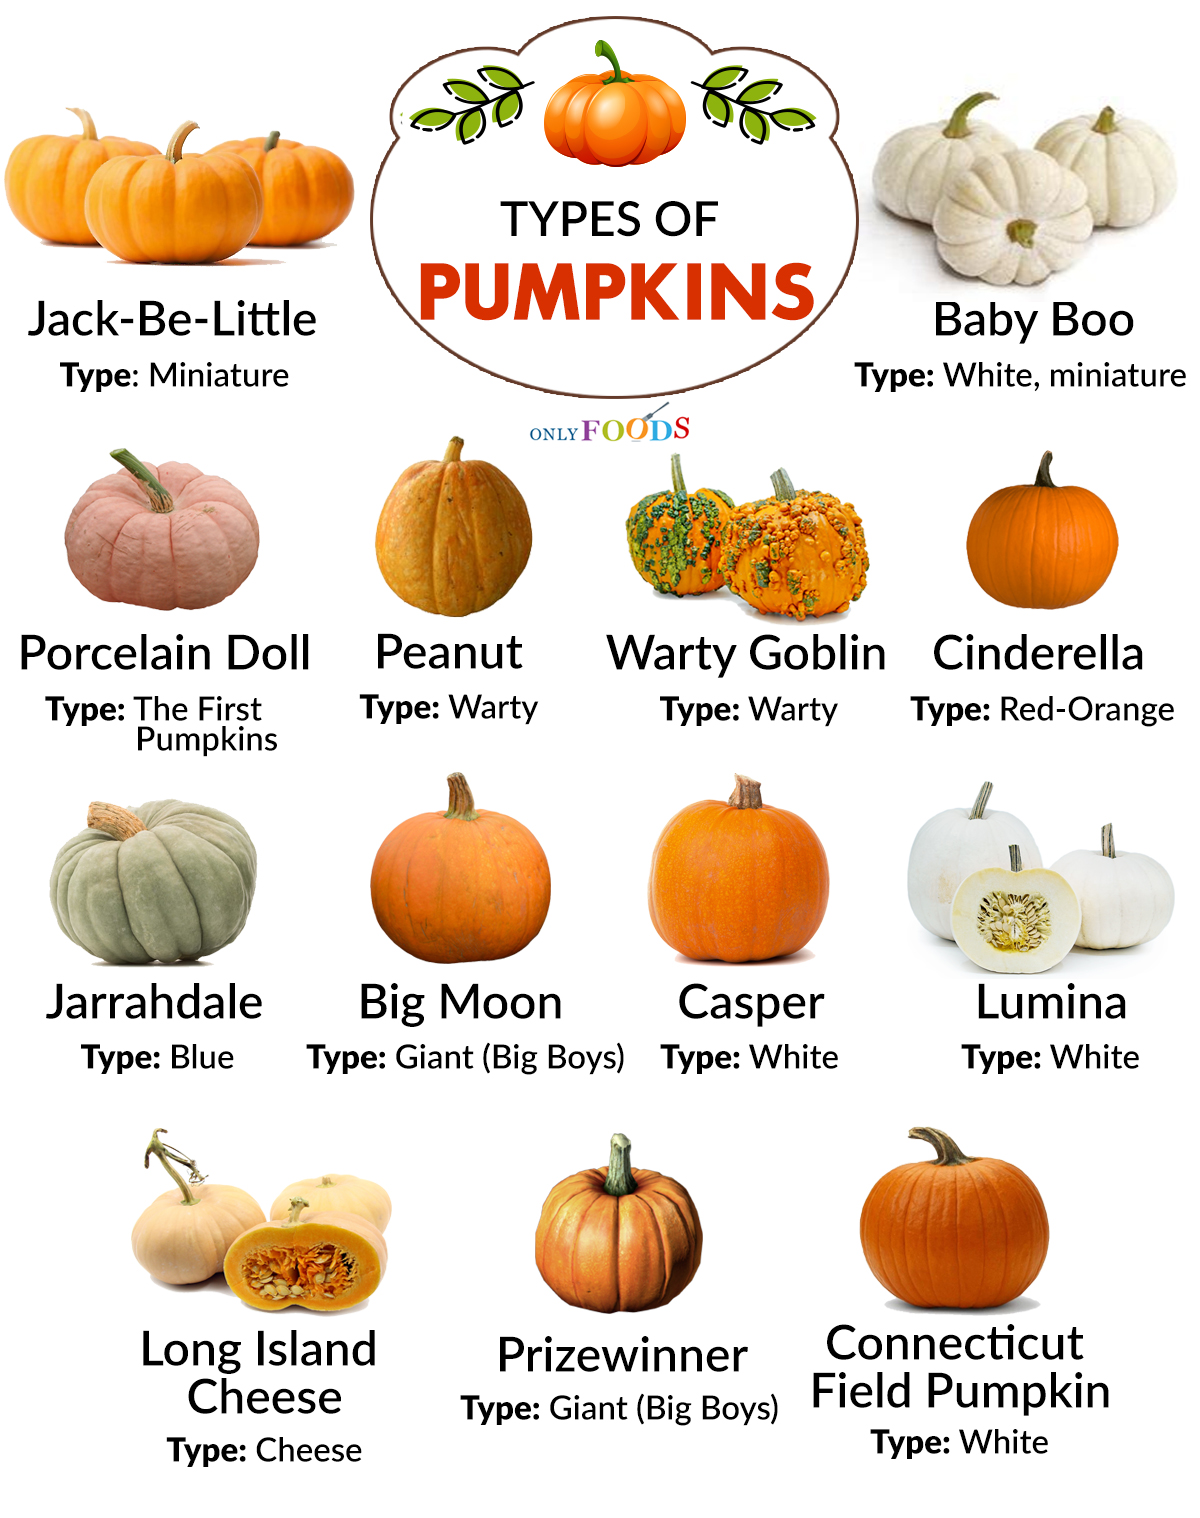 Are All Pumpkin Varieties Edible